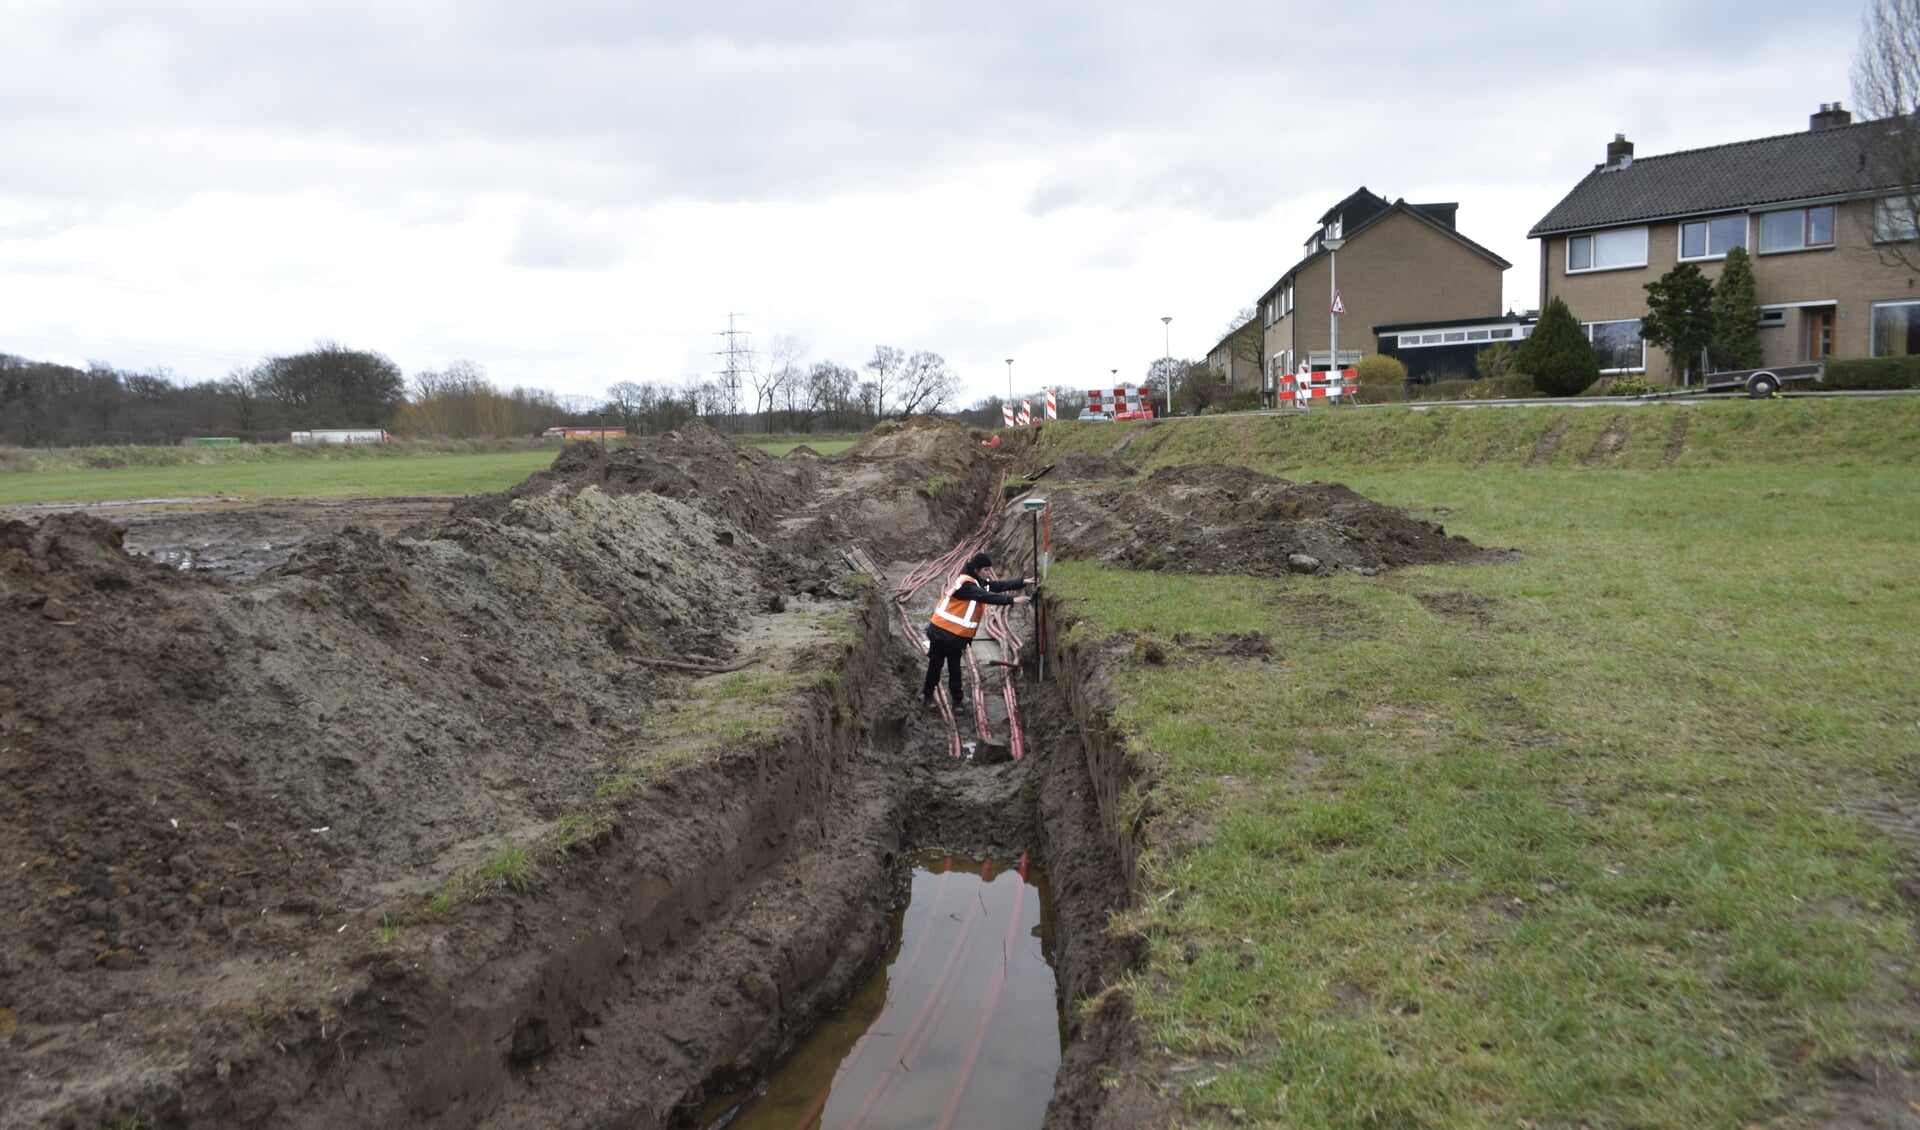 Werkzaamheden op de locatie waar de kanonskogel werd gevonden. Foto's: Erfgoedcentrum Zutphen